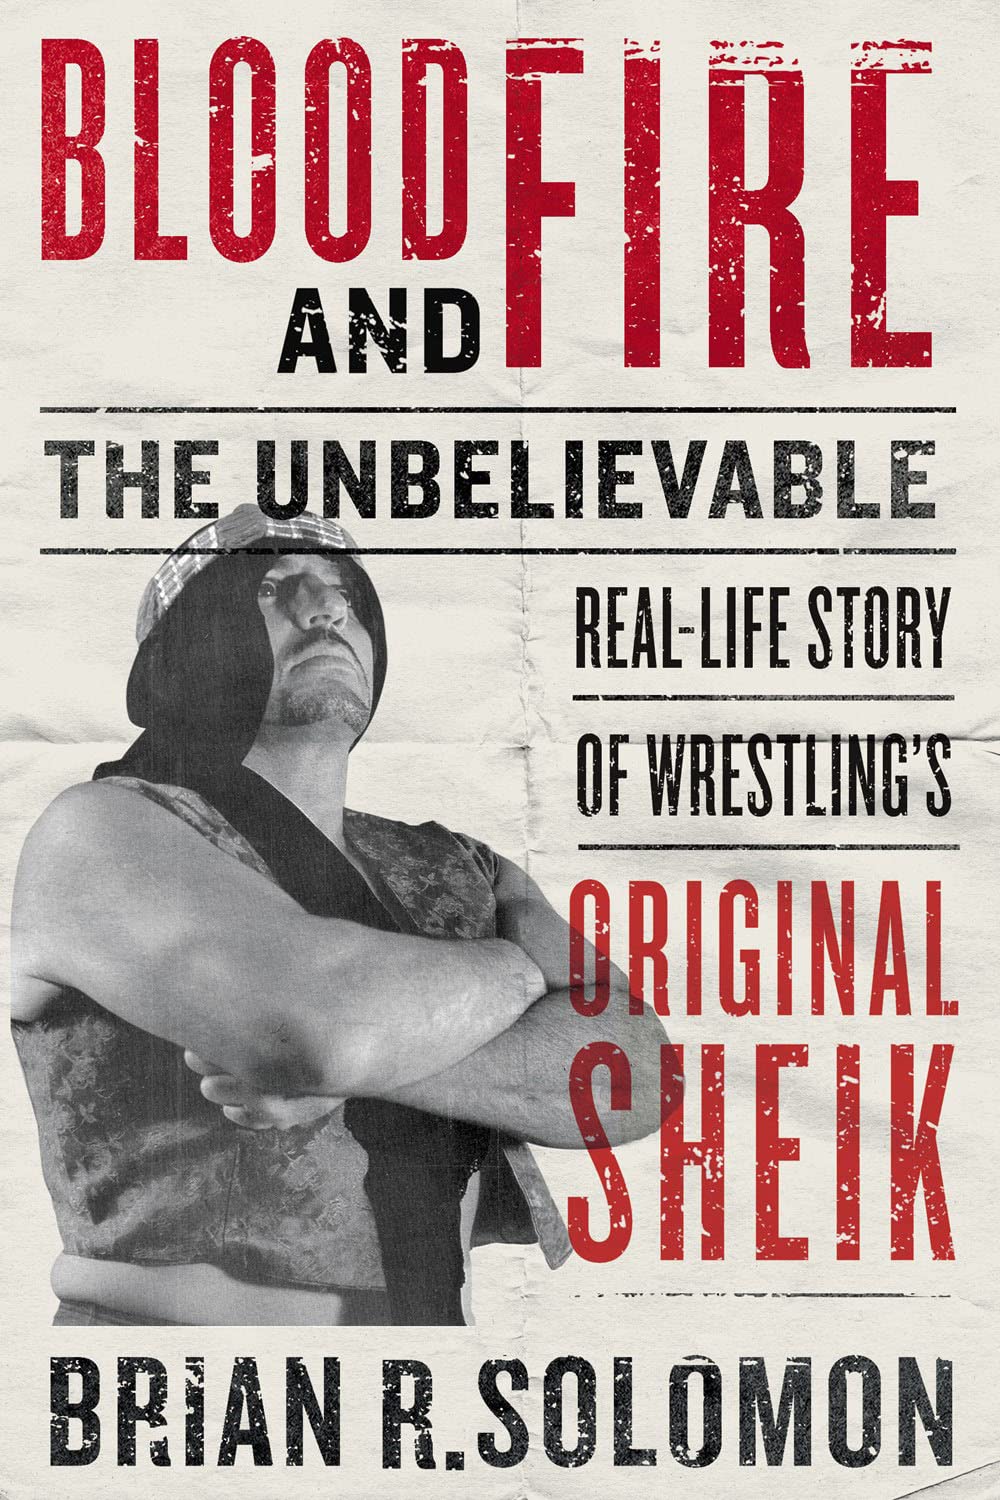 the wrestler the Sheik